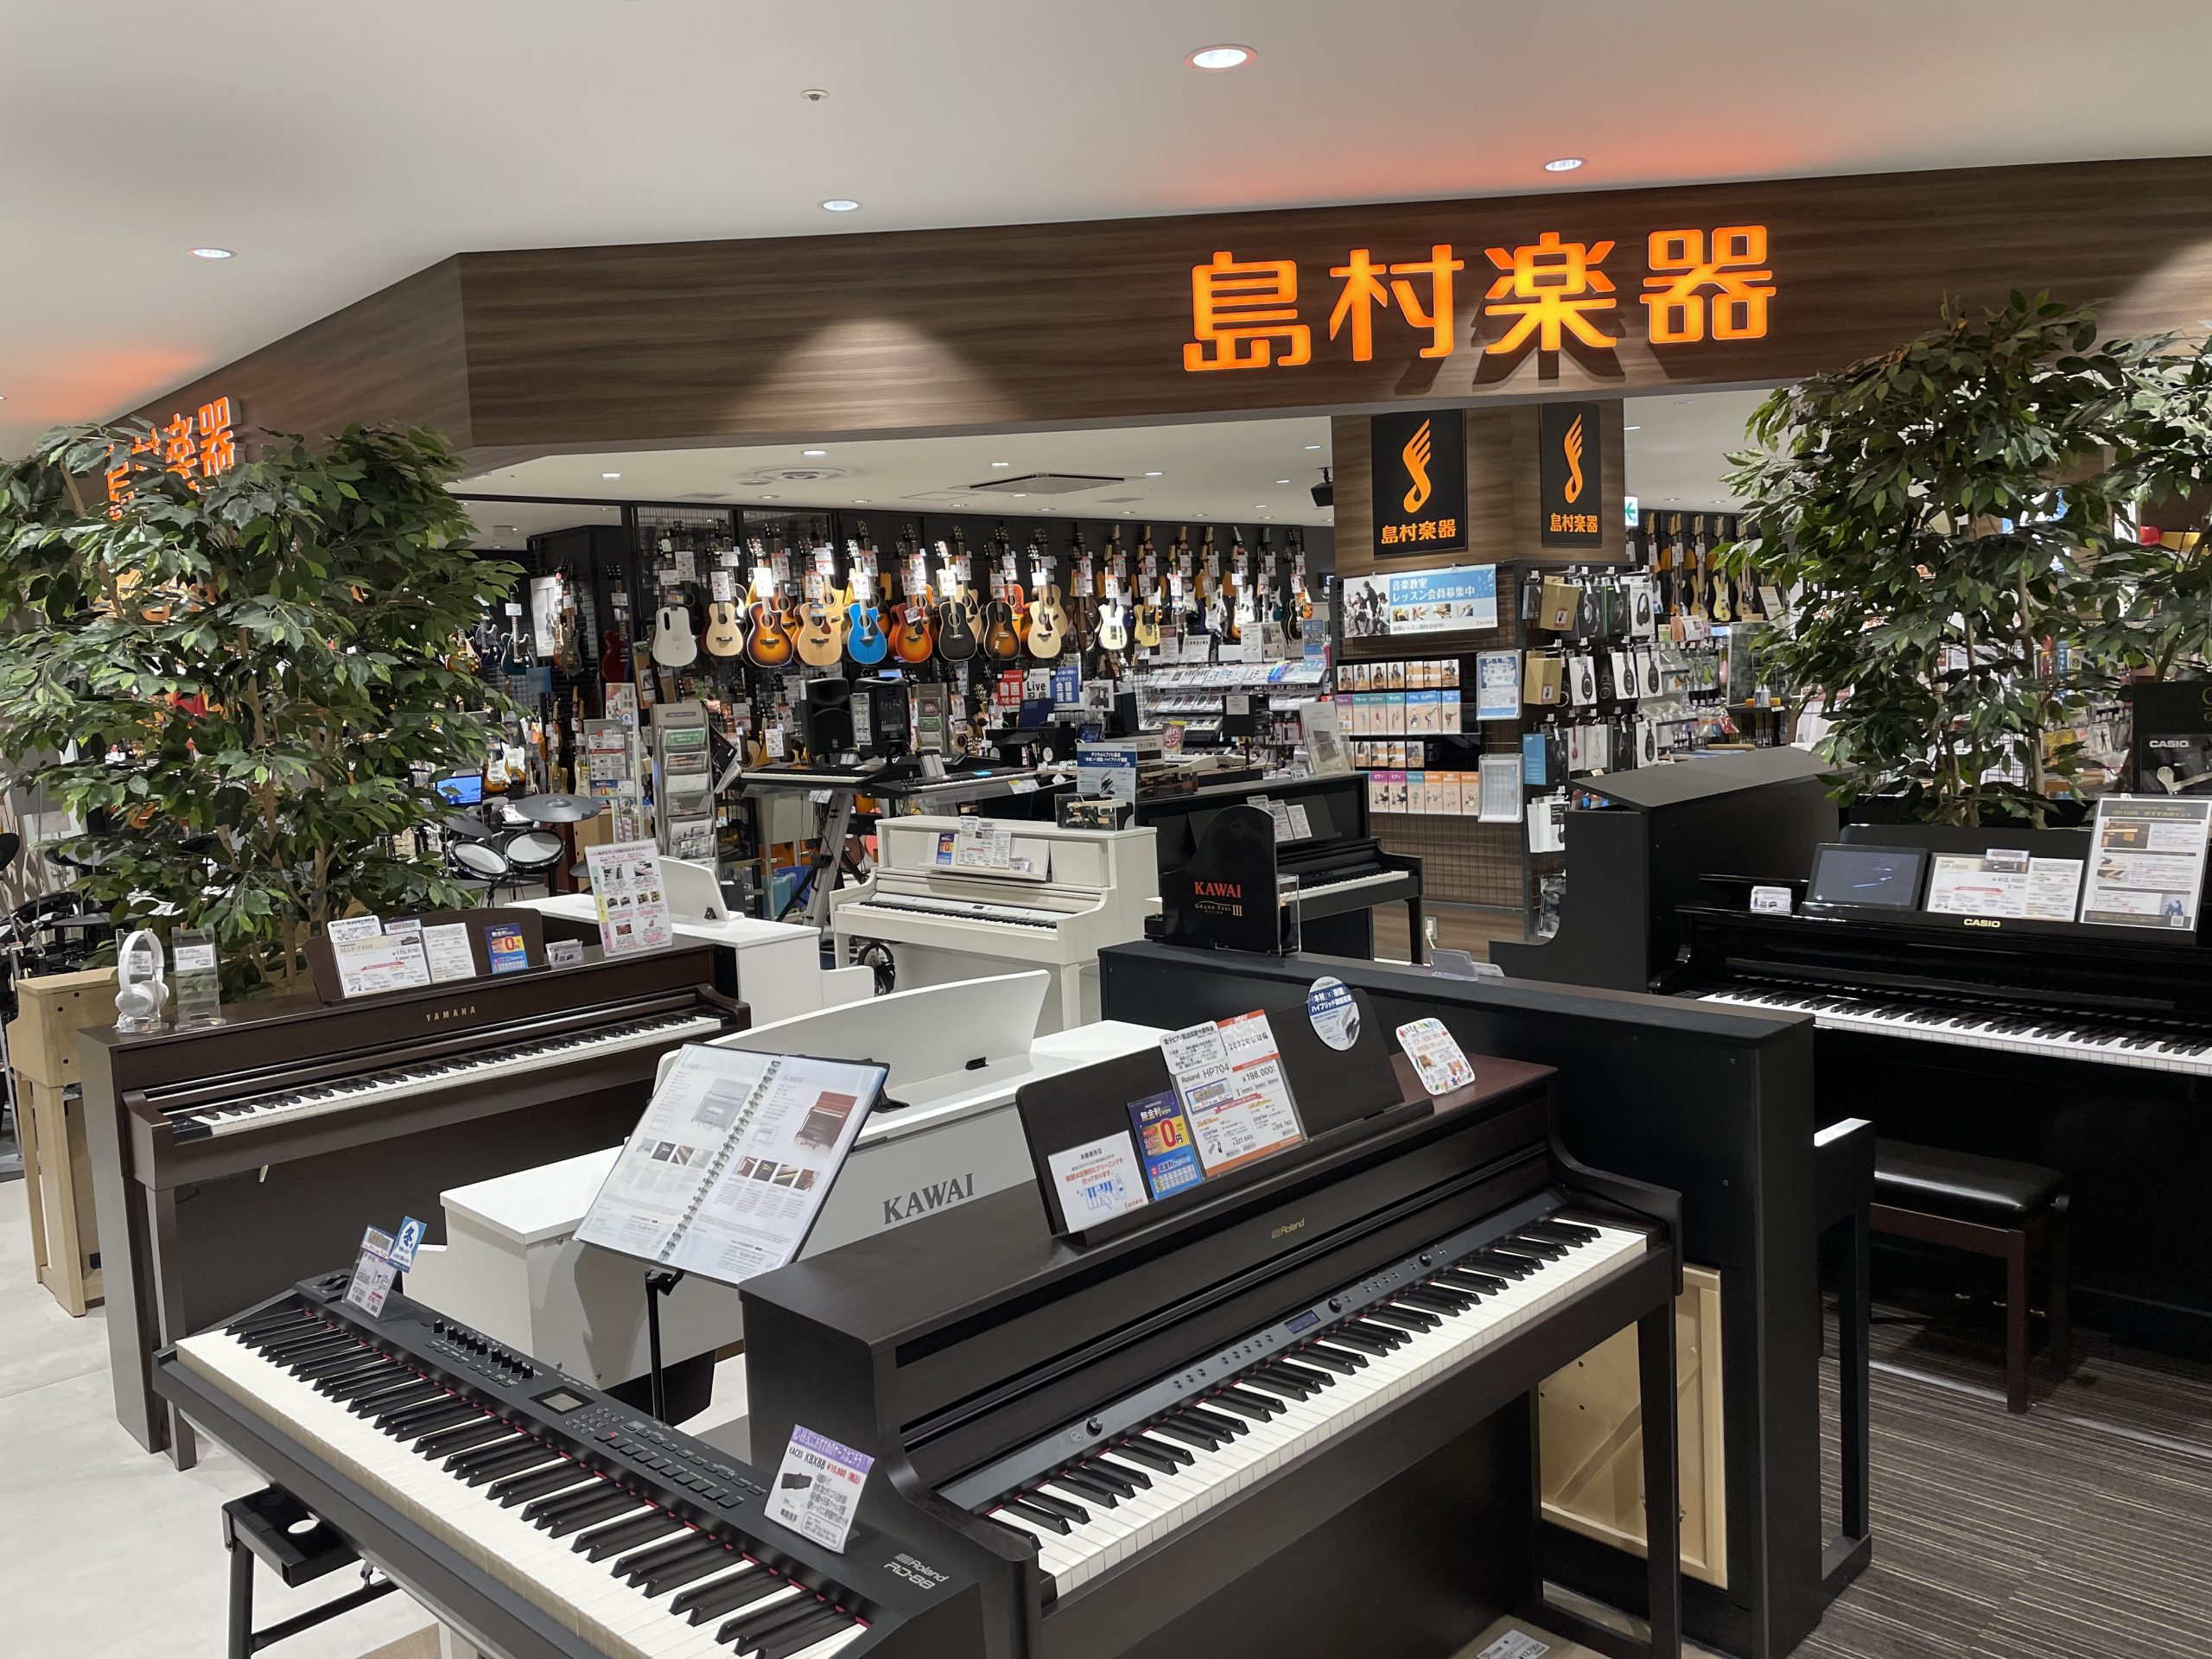 [!!岡山店もアコースティックピアノの展示を開始しました！!!]]] [https://www.shimamura.co.jp/shop/okayama/article/product/20230415/8770:title=] イオンモール岡山店は岡山駅と地下通路で直結されている為、岡山駅から徒歩 […]